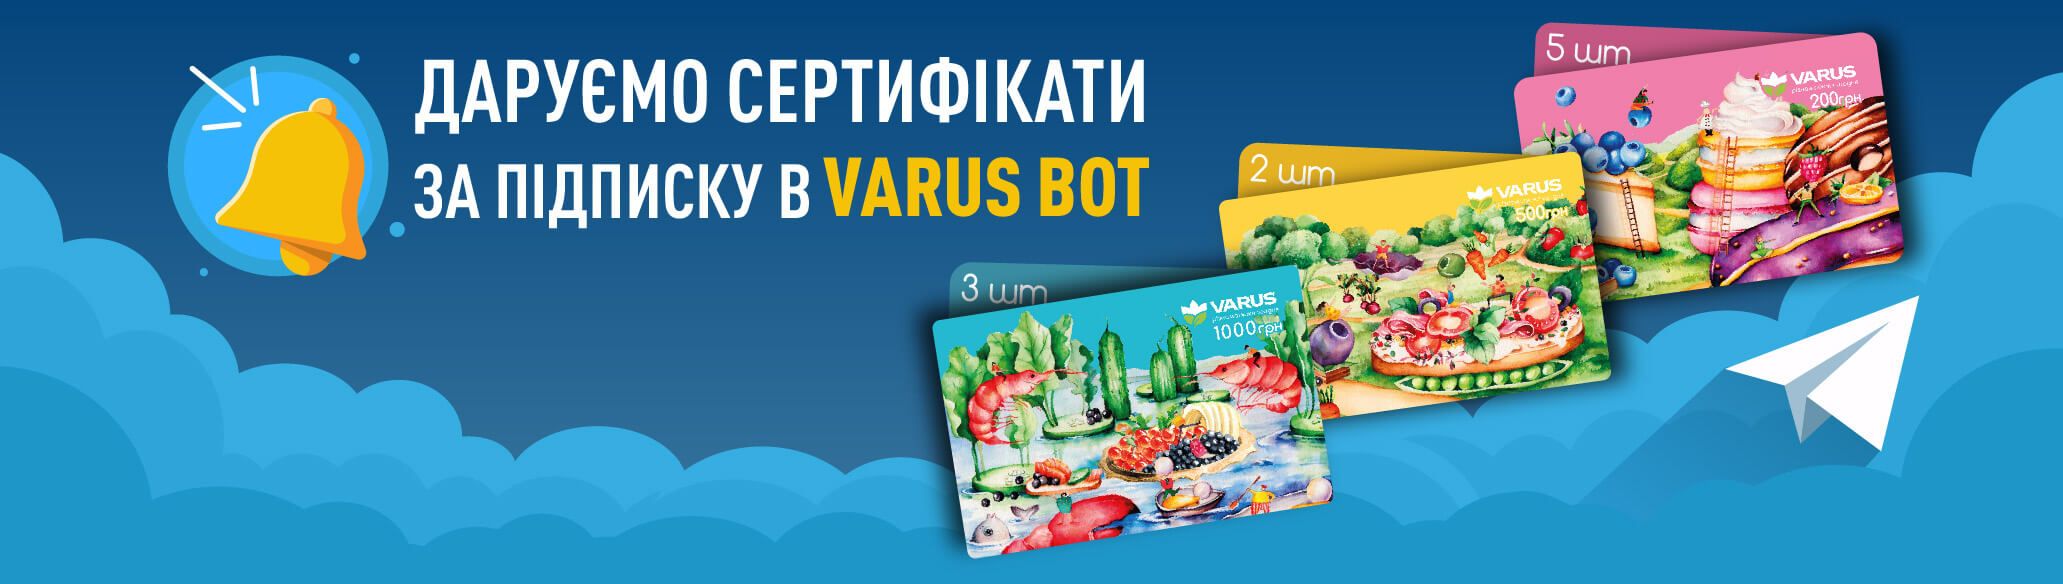 VARUS дарує сертифікати за підписку в VARUS bot